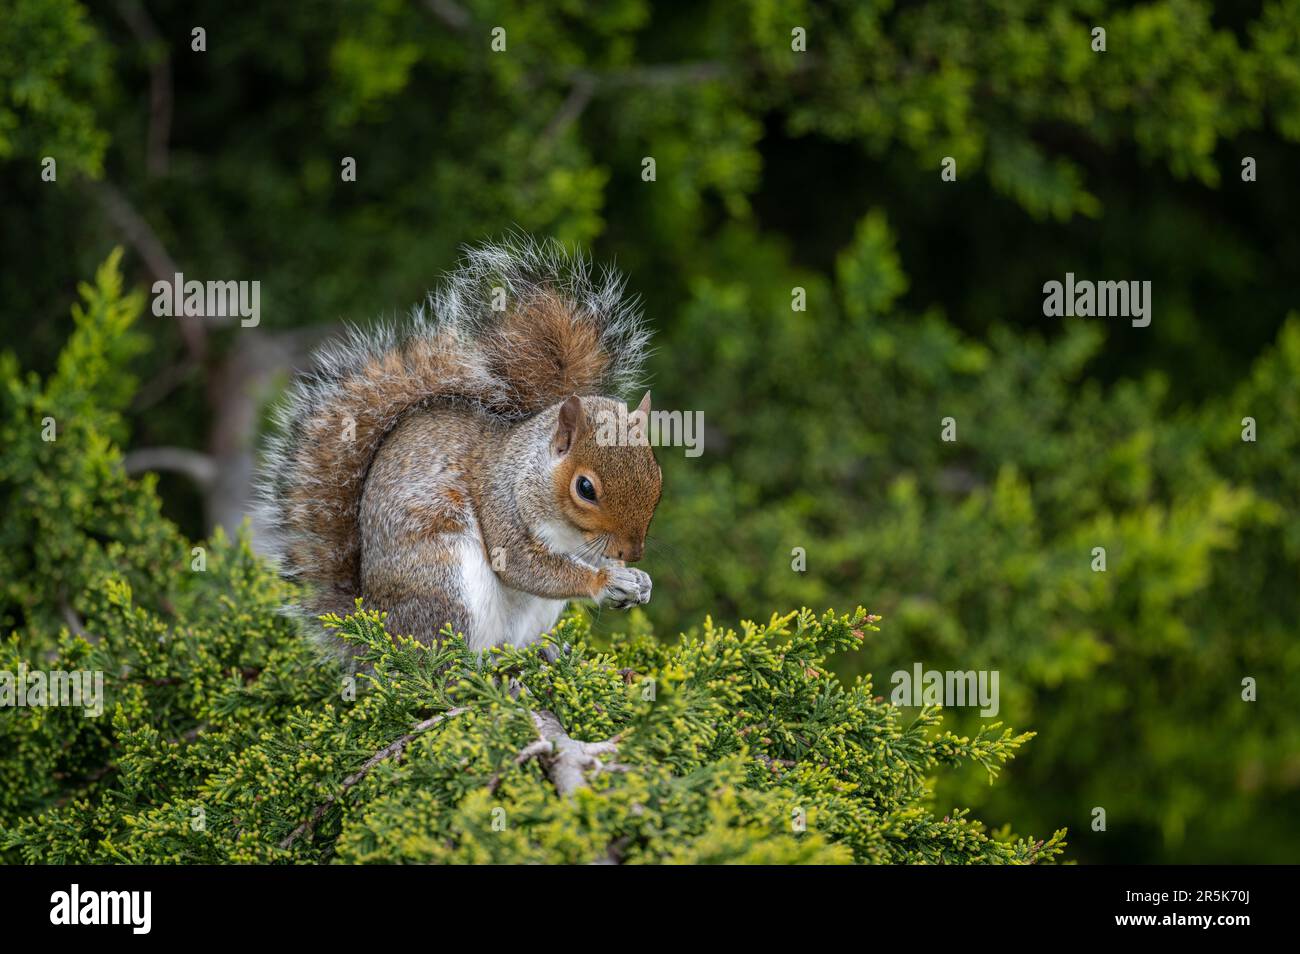 Ein Eichhörnchen, das auf einem Baum sitzt. Das Eichhörnchen zeigt halb rechts mit den Pfoten vorne. Grey Squirrel (Sciurus carolinensis) in Beckenham, Kent, Vereinigtes Königreich. Stockfoto